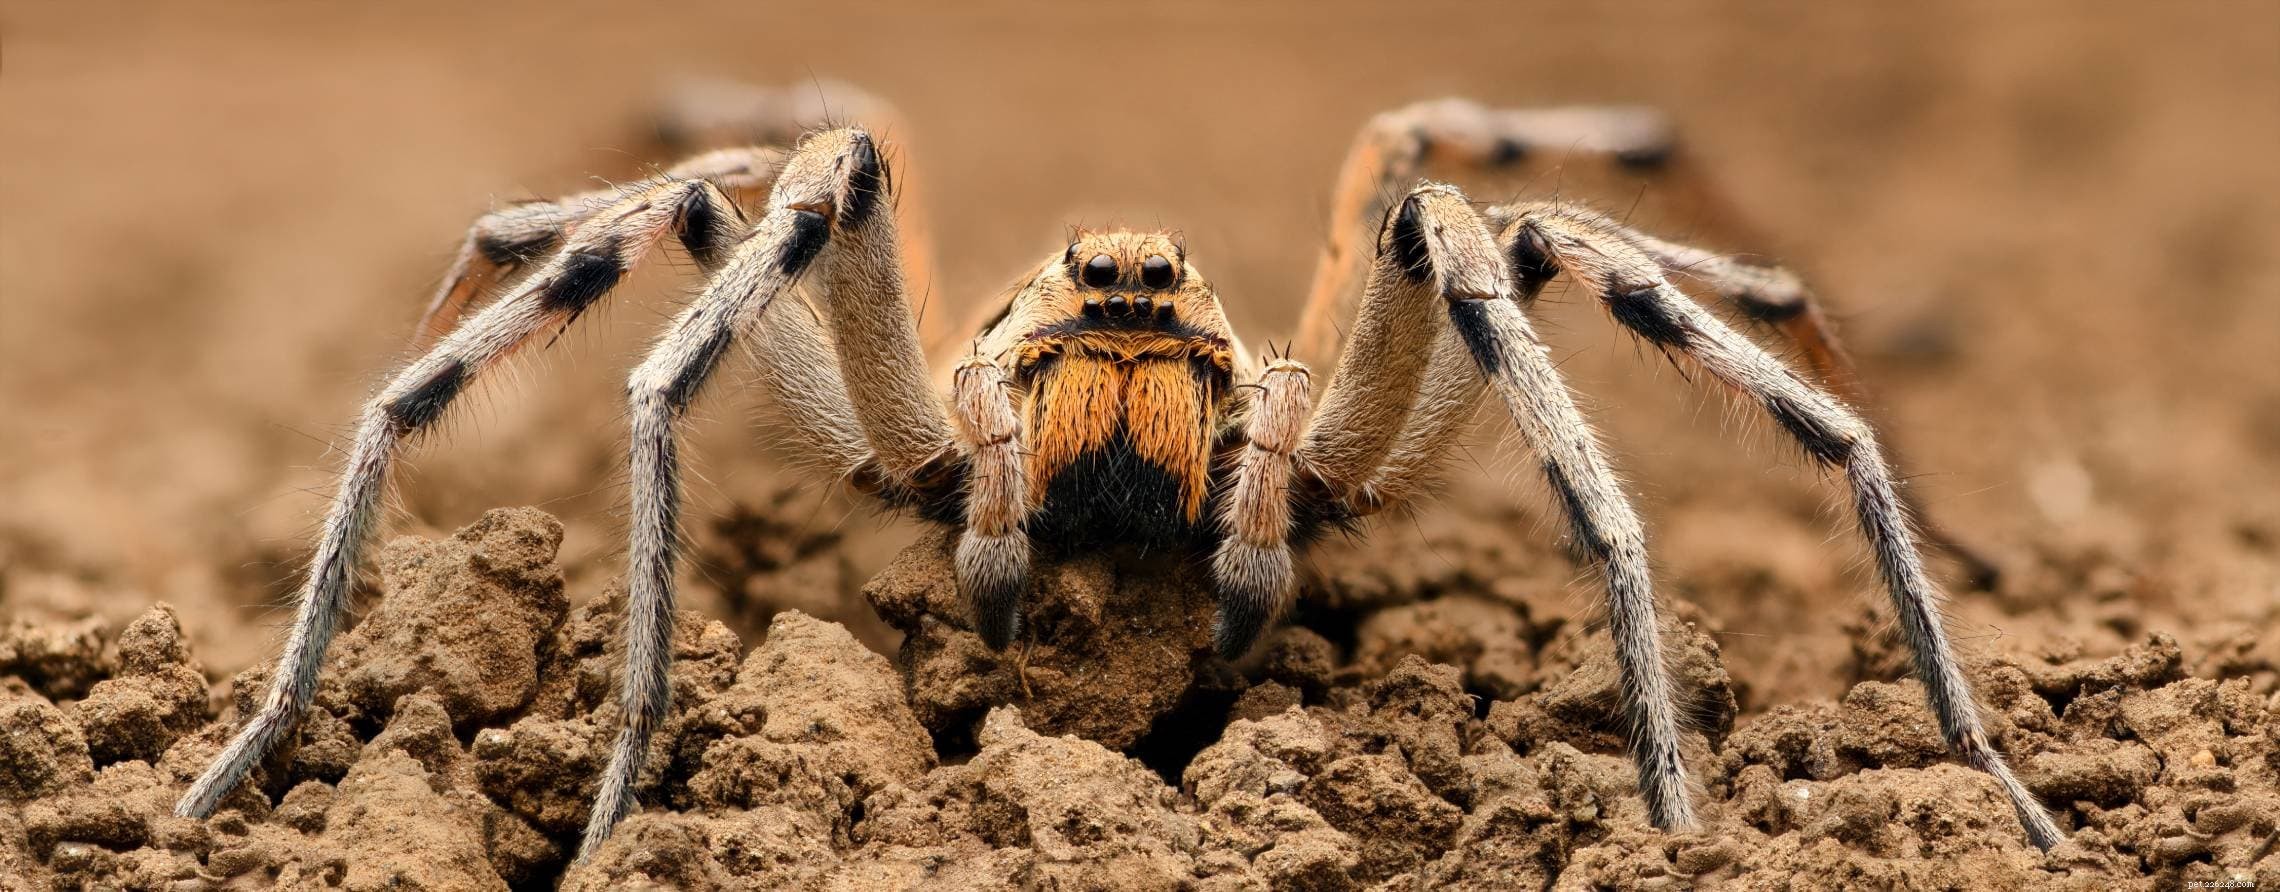 하와이에서 발견된 거미 20마리